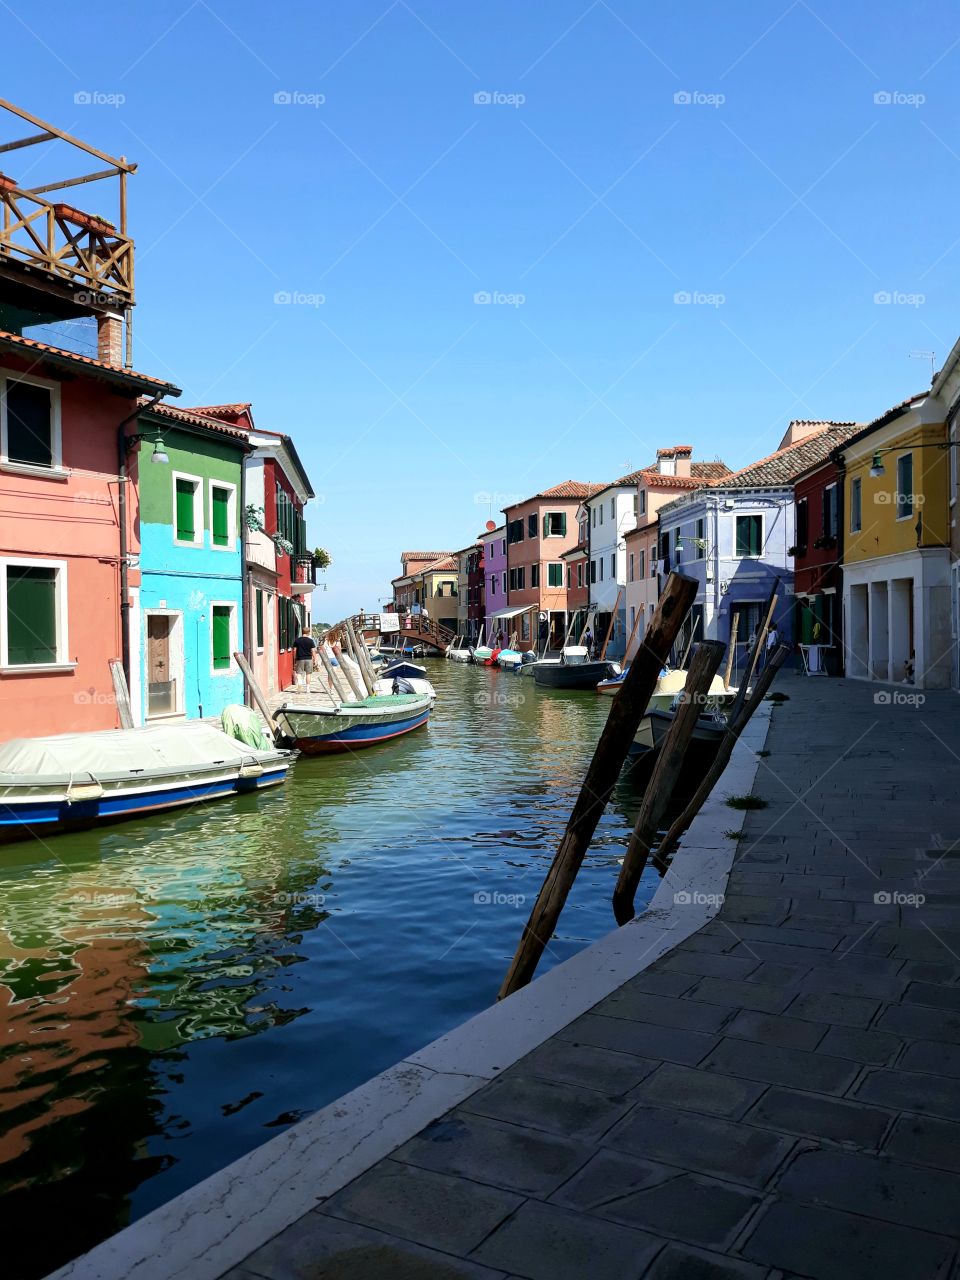 Burano, Venezia VE, Italia 🇮🇹
The colorful city